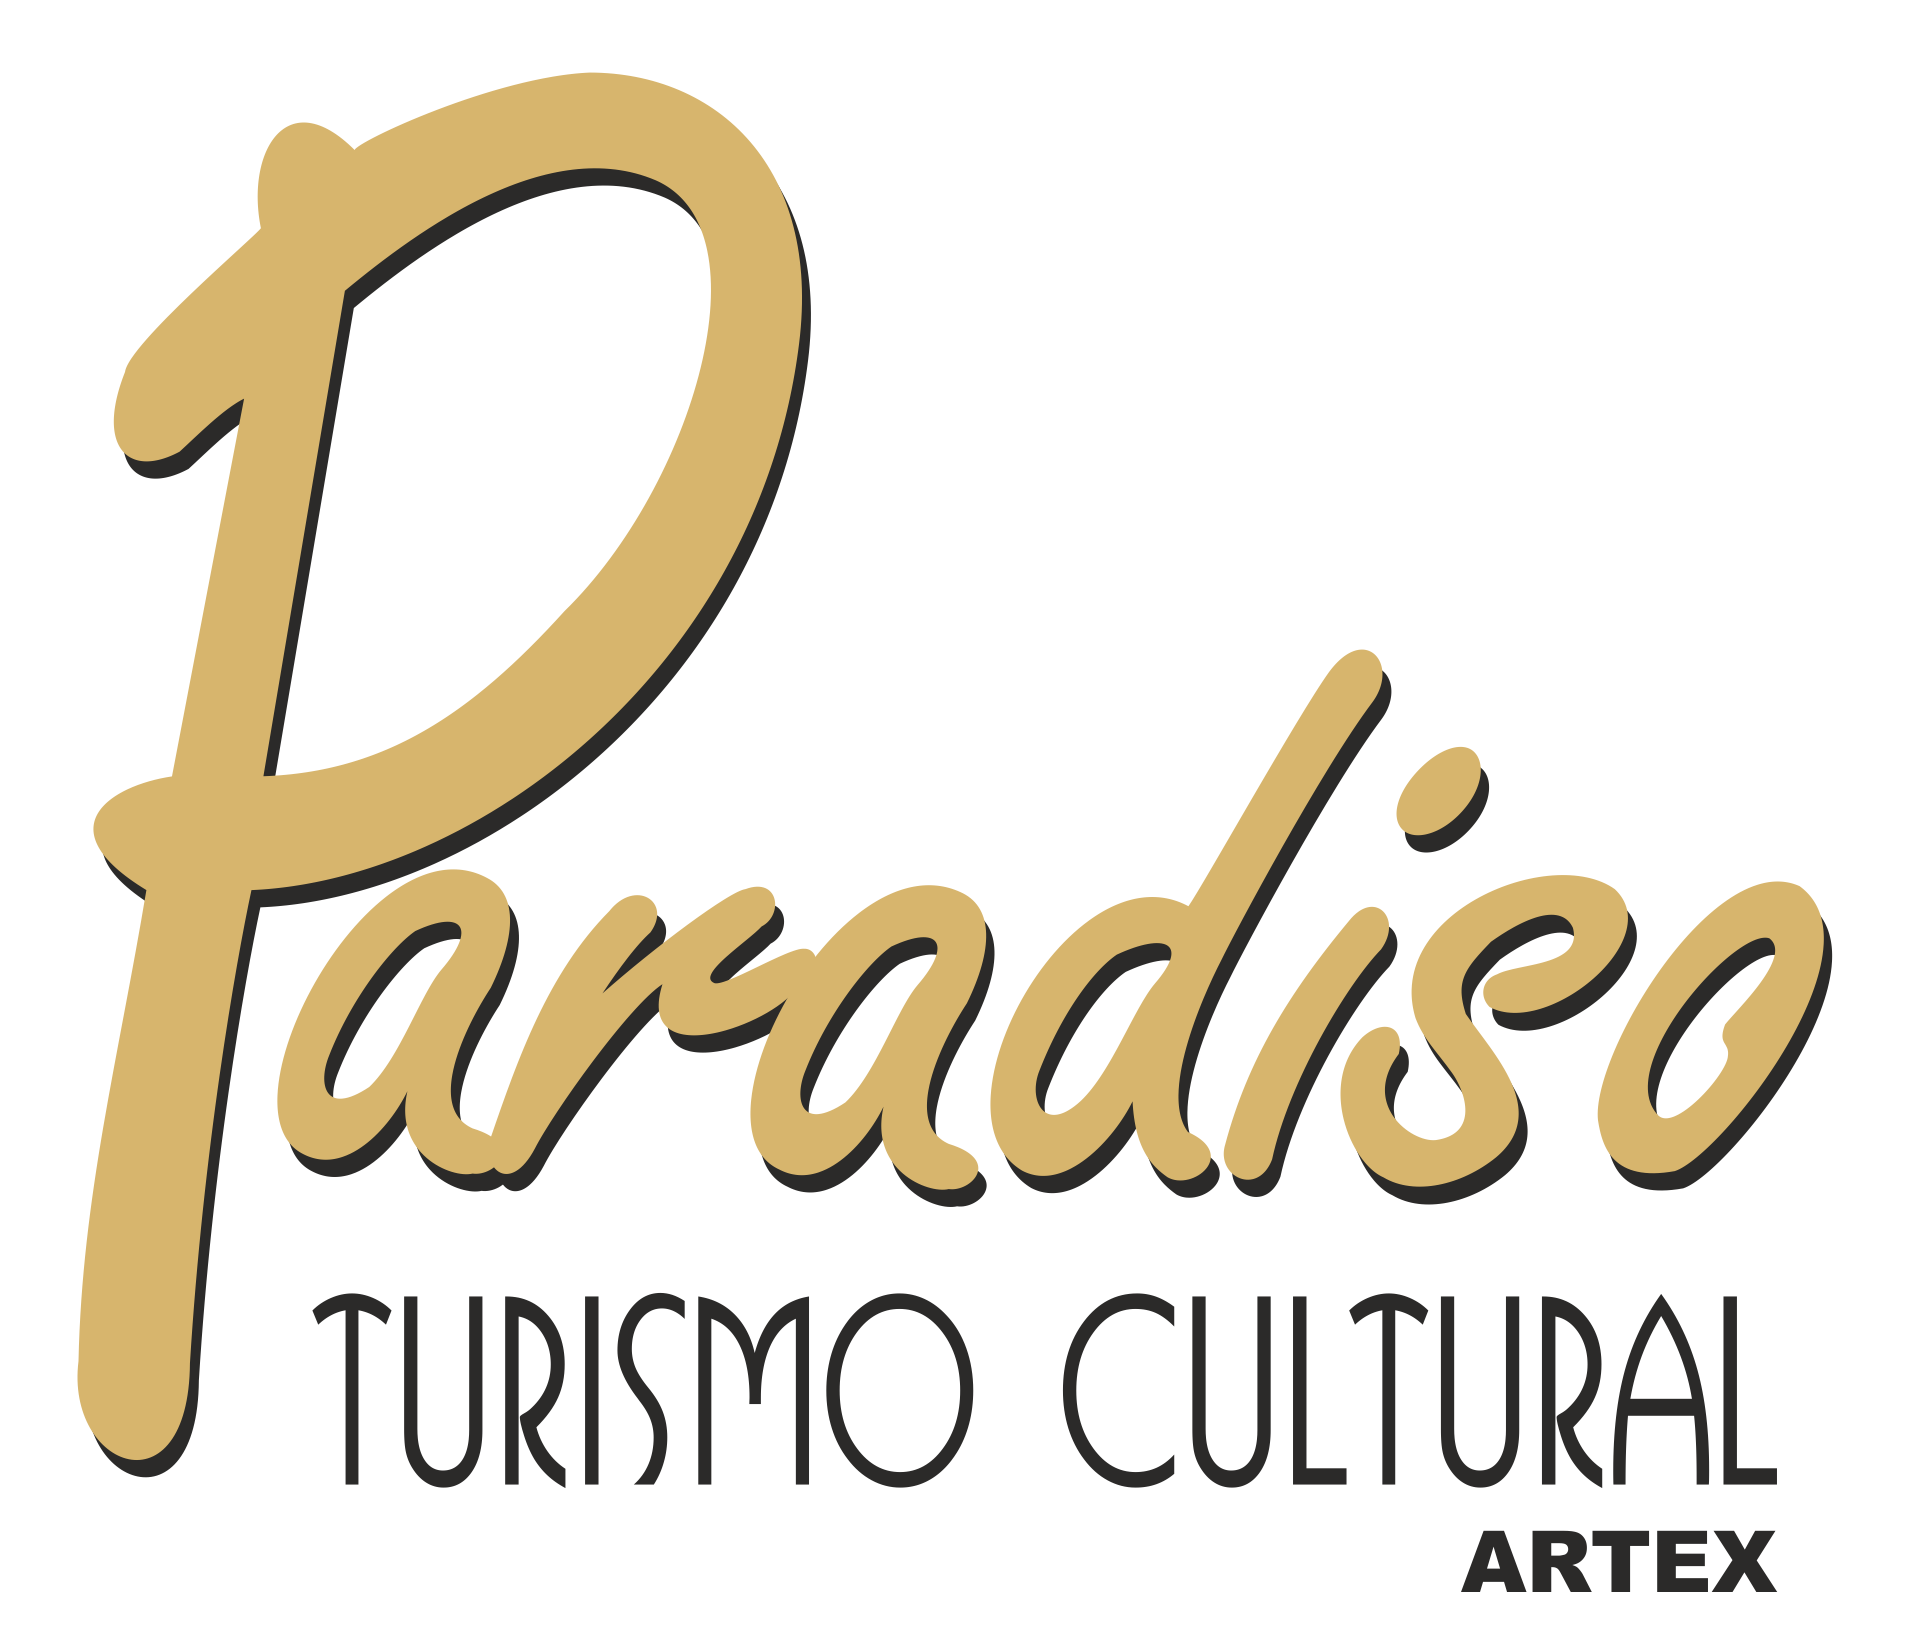 Paradiso ofrece lo más autóctono de la cultura cubana